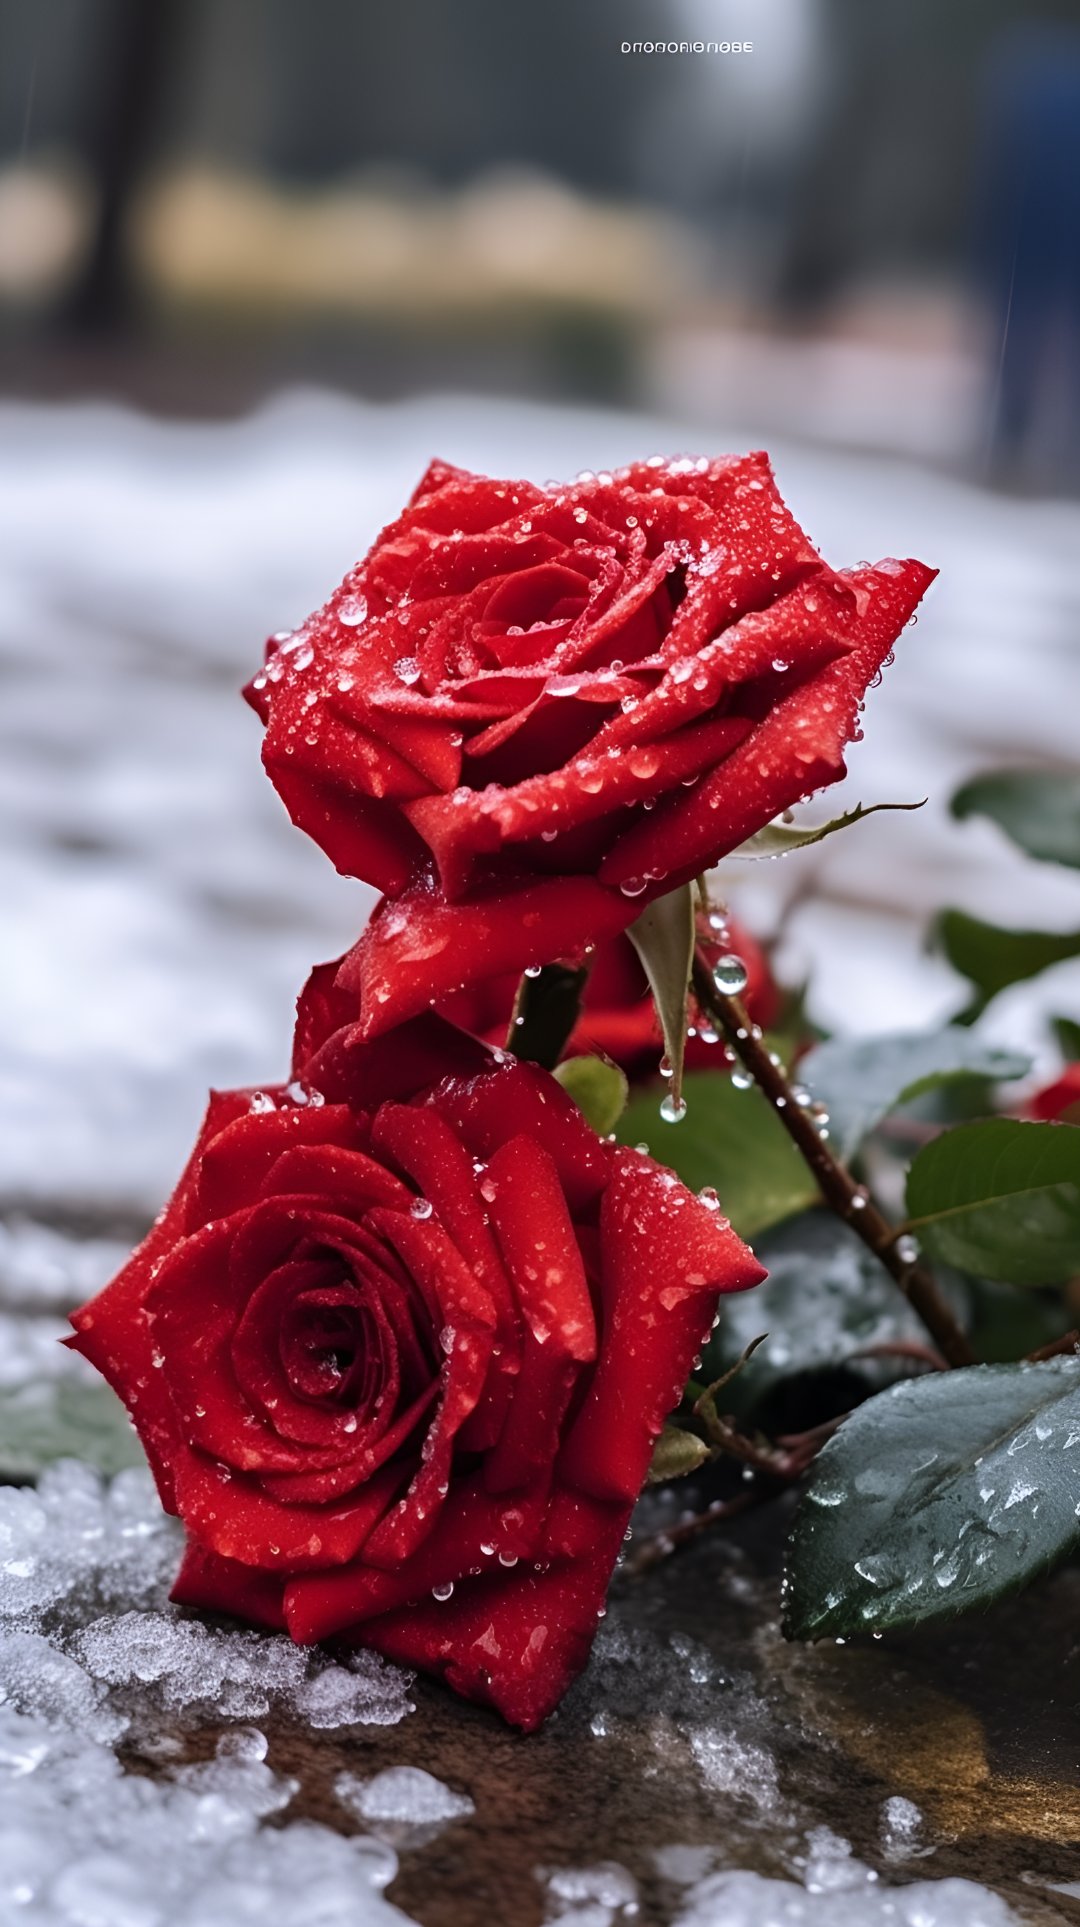 铿锵玫瑰的唯美图片图片